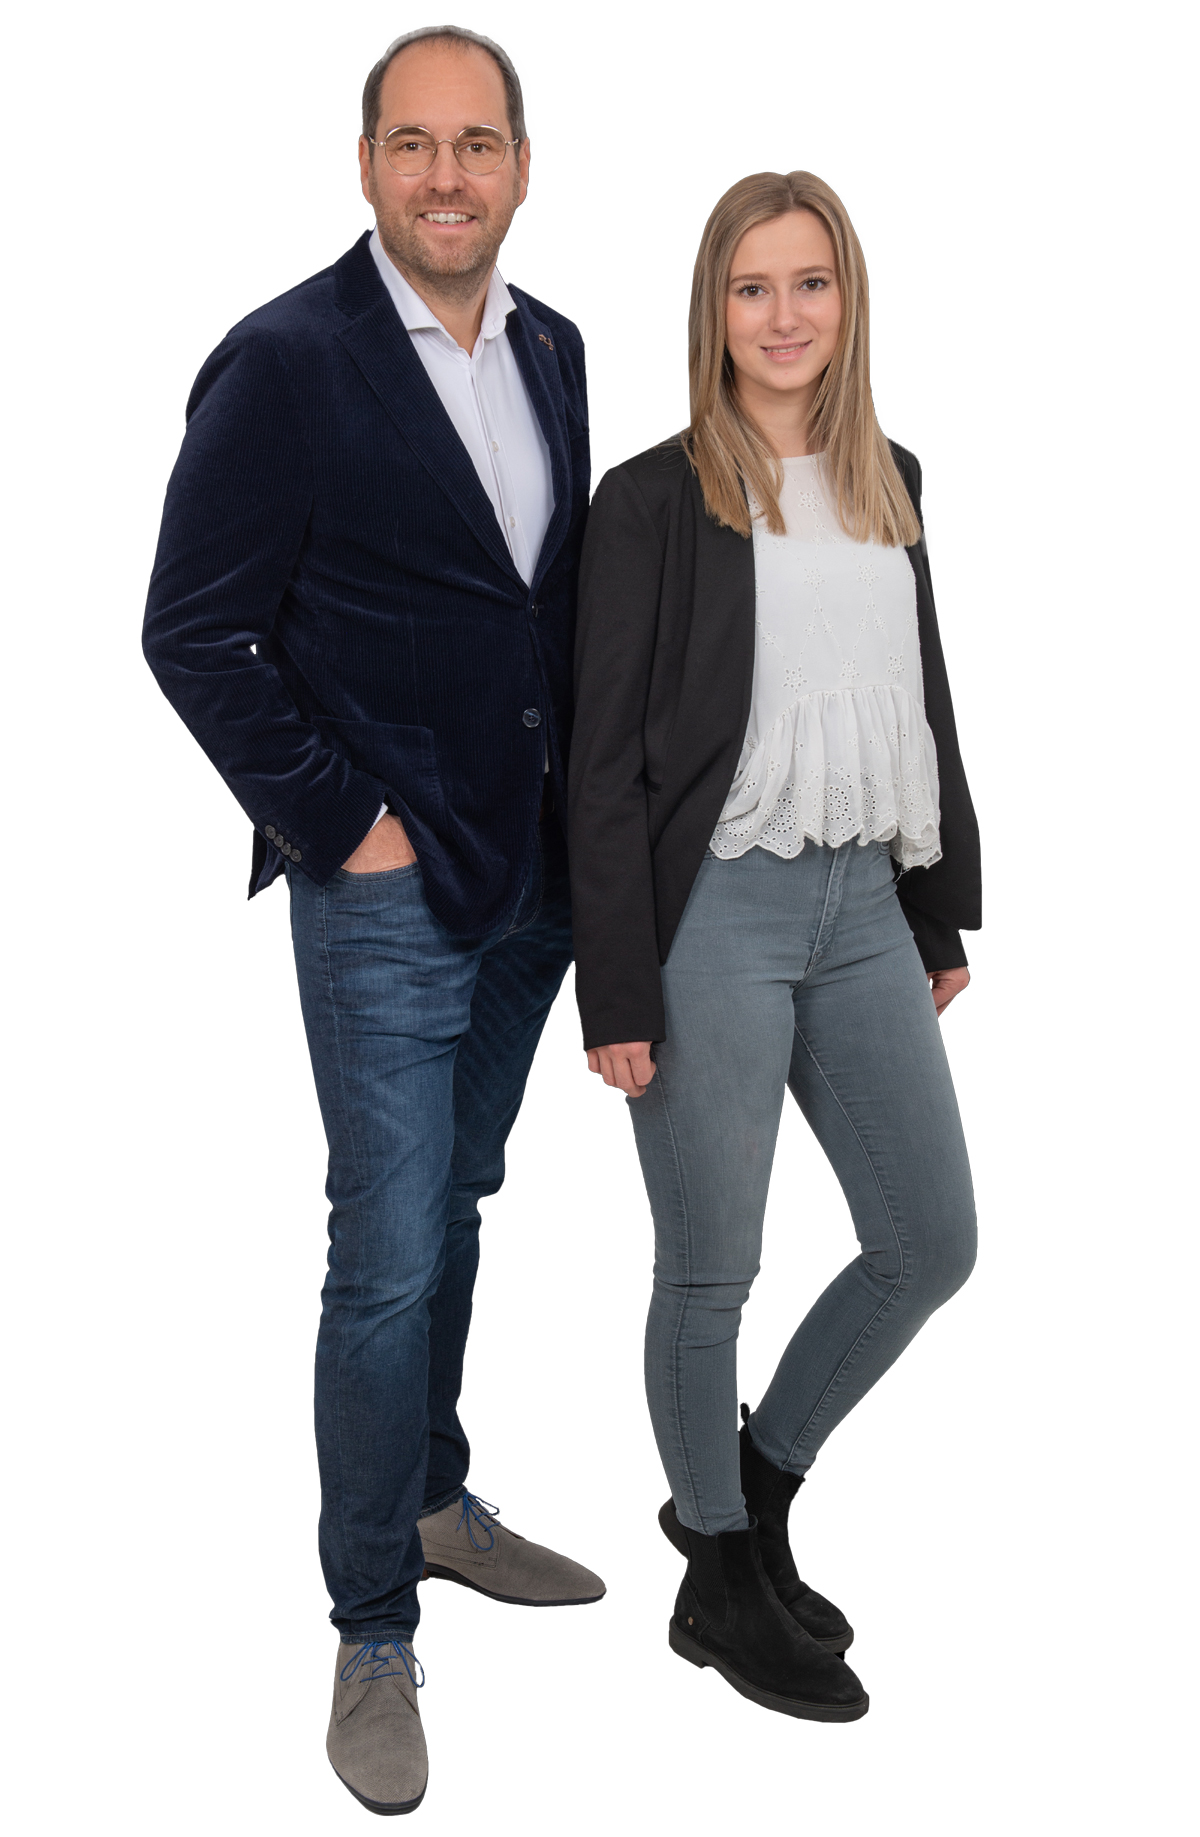 Marc Müller Immobilienmakler / Diplom-Immobilienwirt (DIA) und Lena Müller Immobilienkauffrag (IHK)